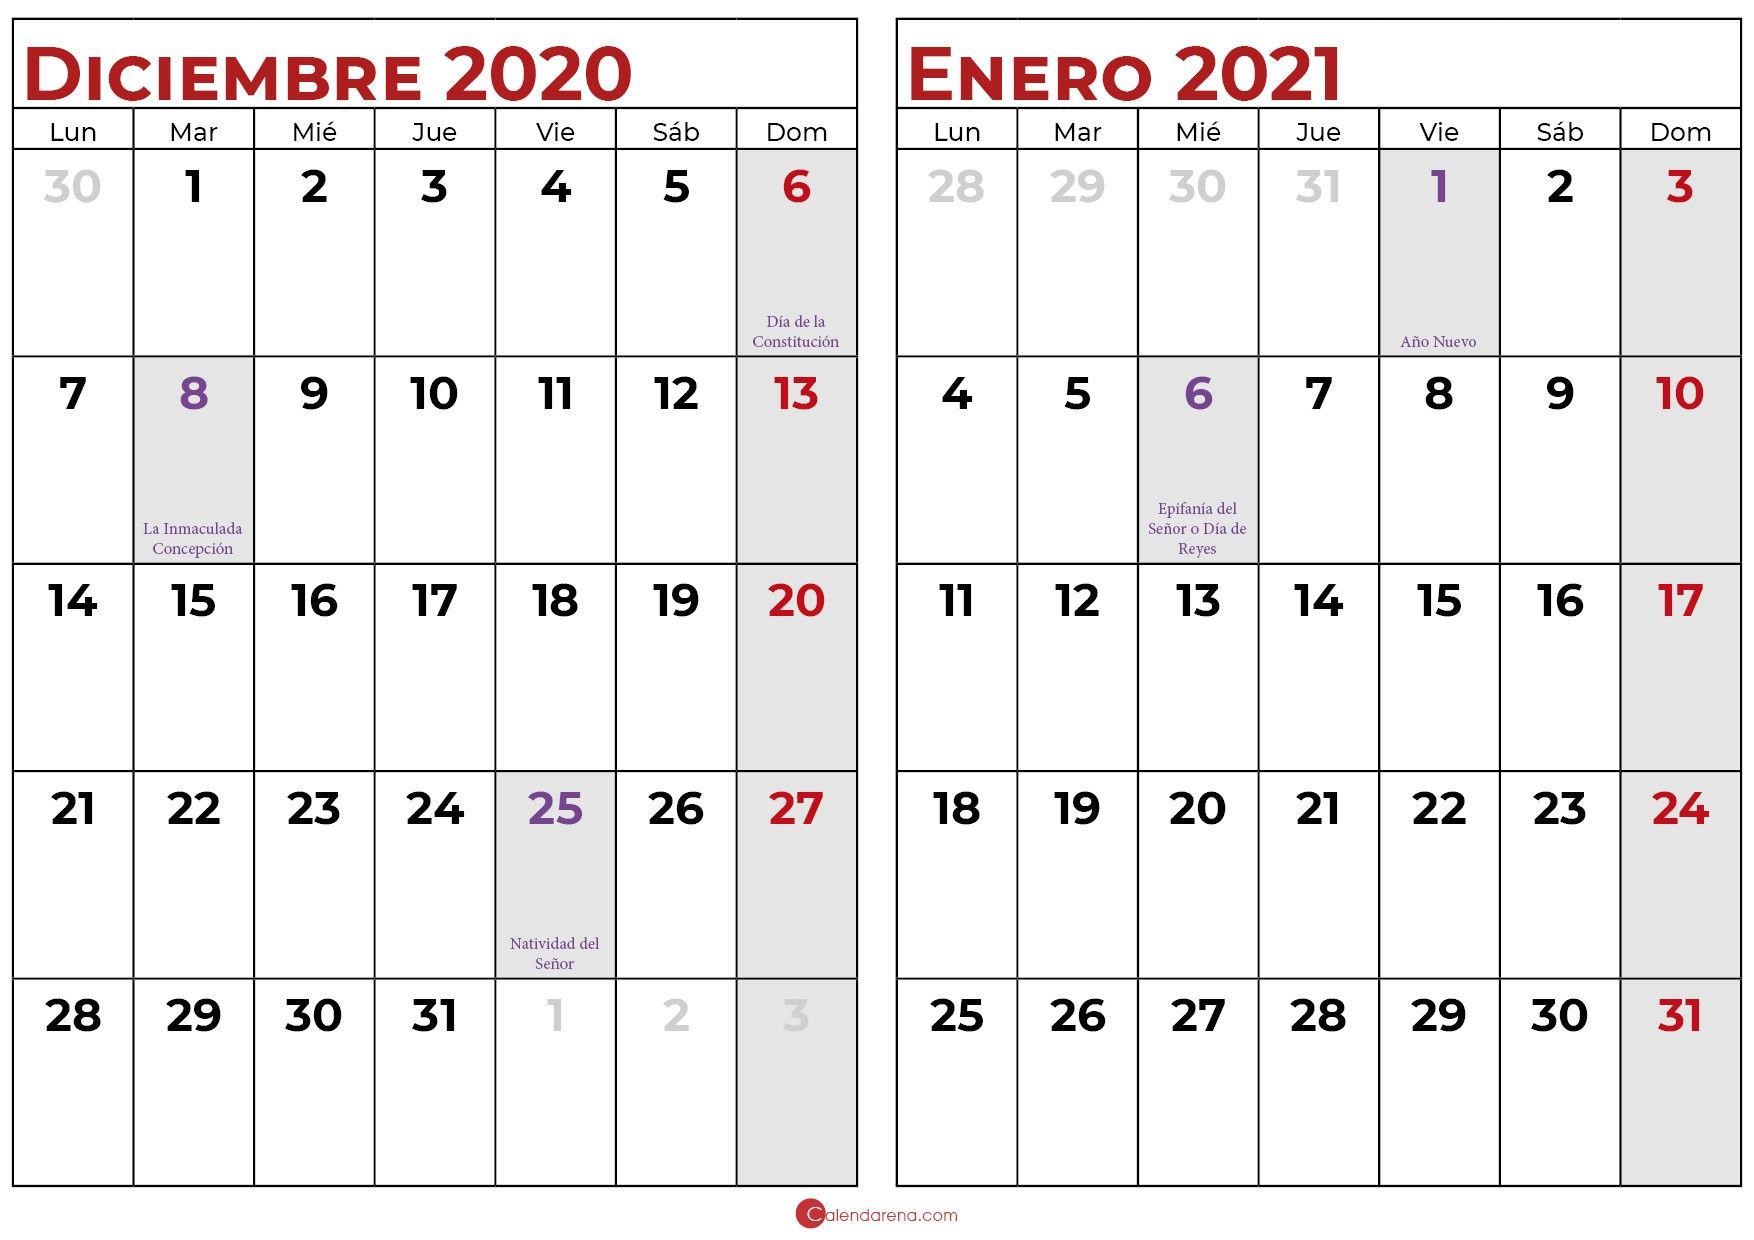 MOR M2 avances diciembre 2020 enero 2021